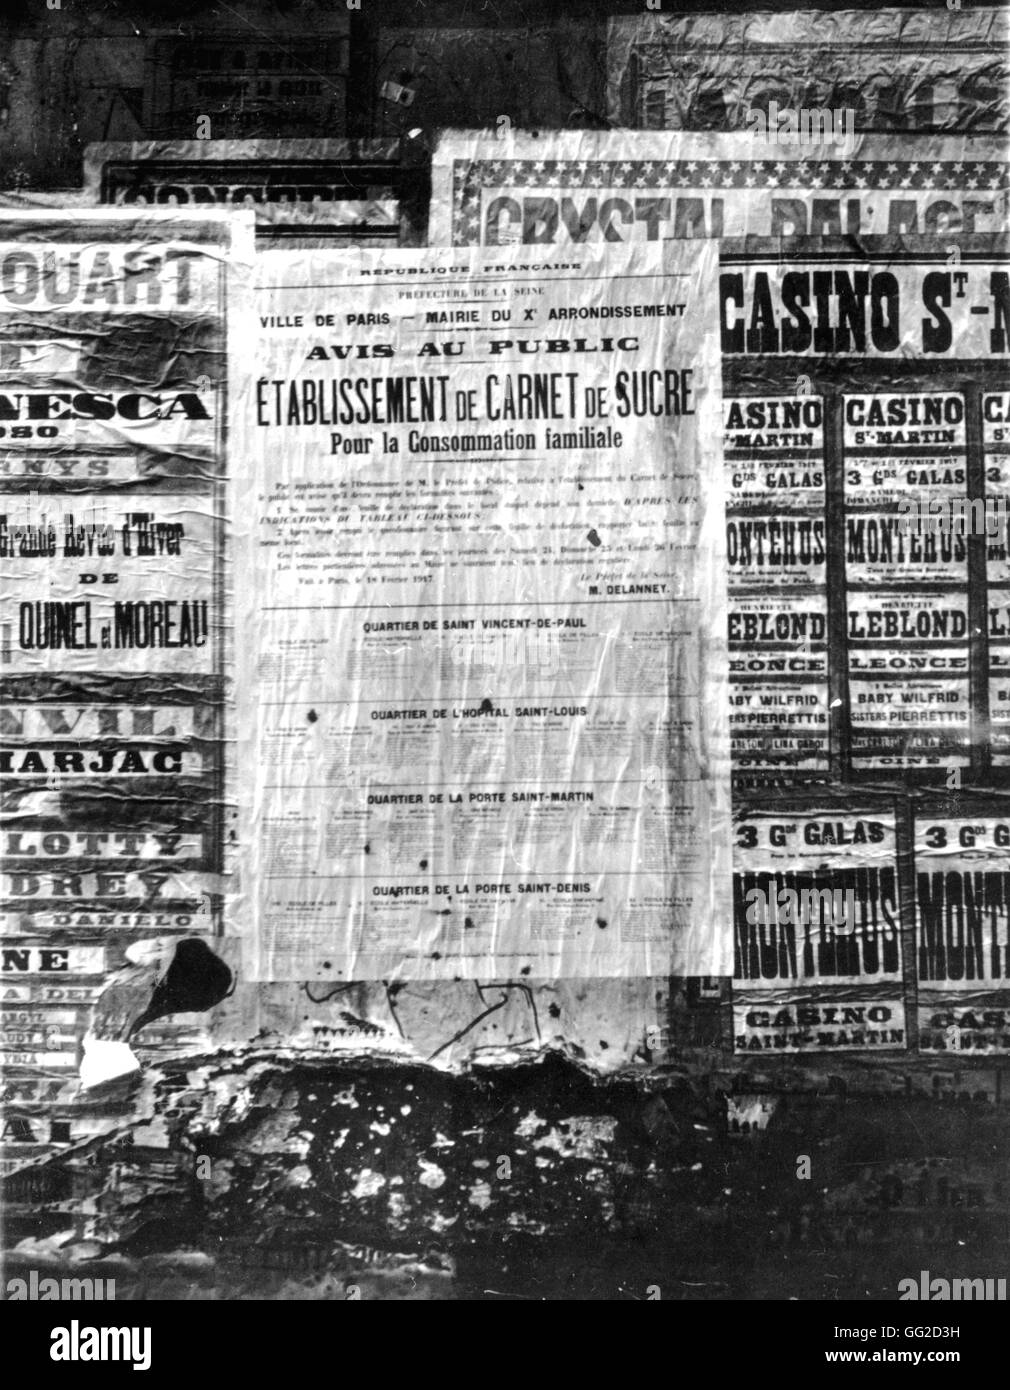 Pendant la guerre de l'affiche annonçant les restrictions de sucre Janvier 1917 France - Première Guerre mondiale Banque D'Images